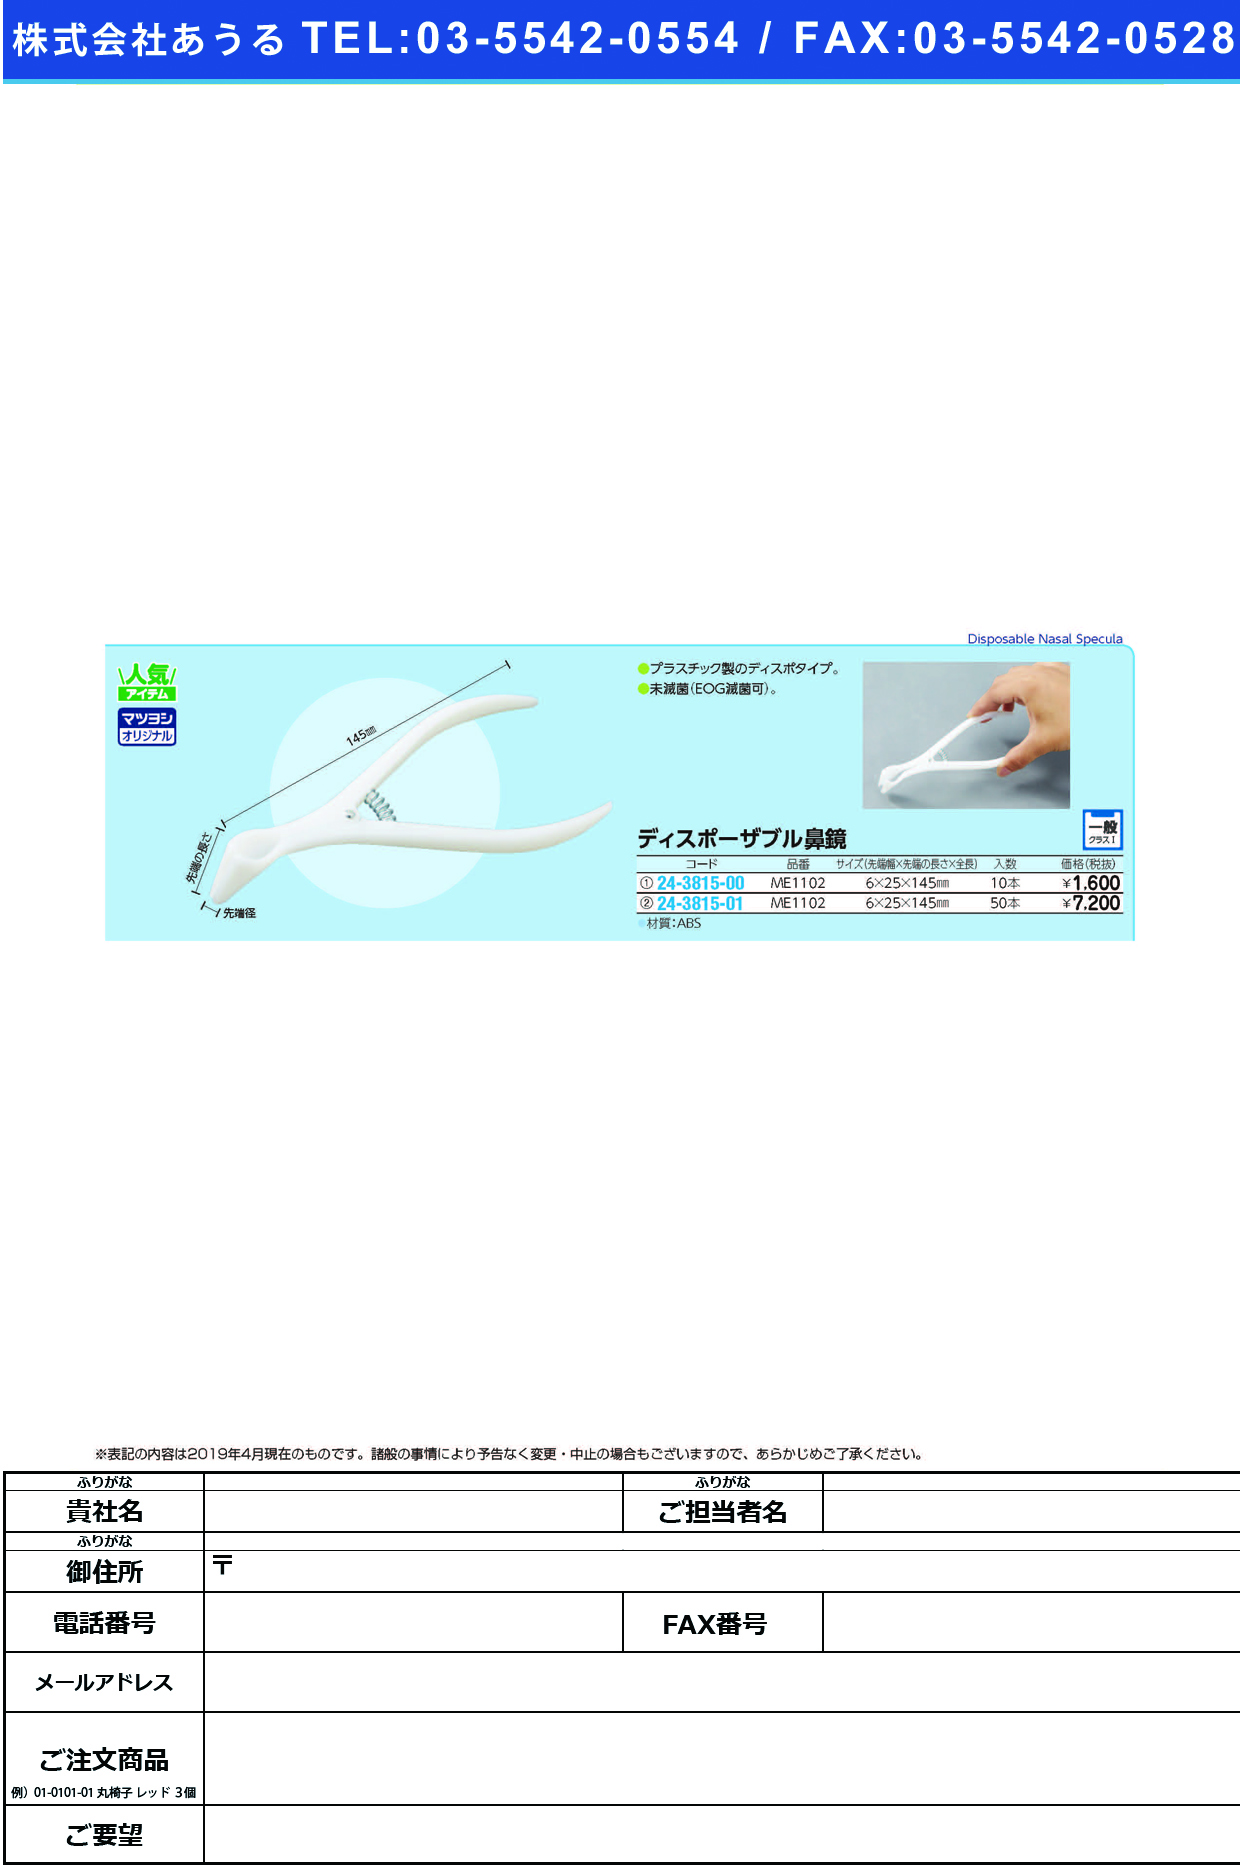 (24-3815-00)ディスポーザブル鼻鏡 ME1102(10ﾎﾟﾝｲﾘ) ﾃﾞｨｽﾎﾟｰｻﾞﾌﾞﾙﾋﾞｷｮｳ【1袋単位】【2019年カタログ商品】